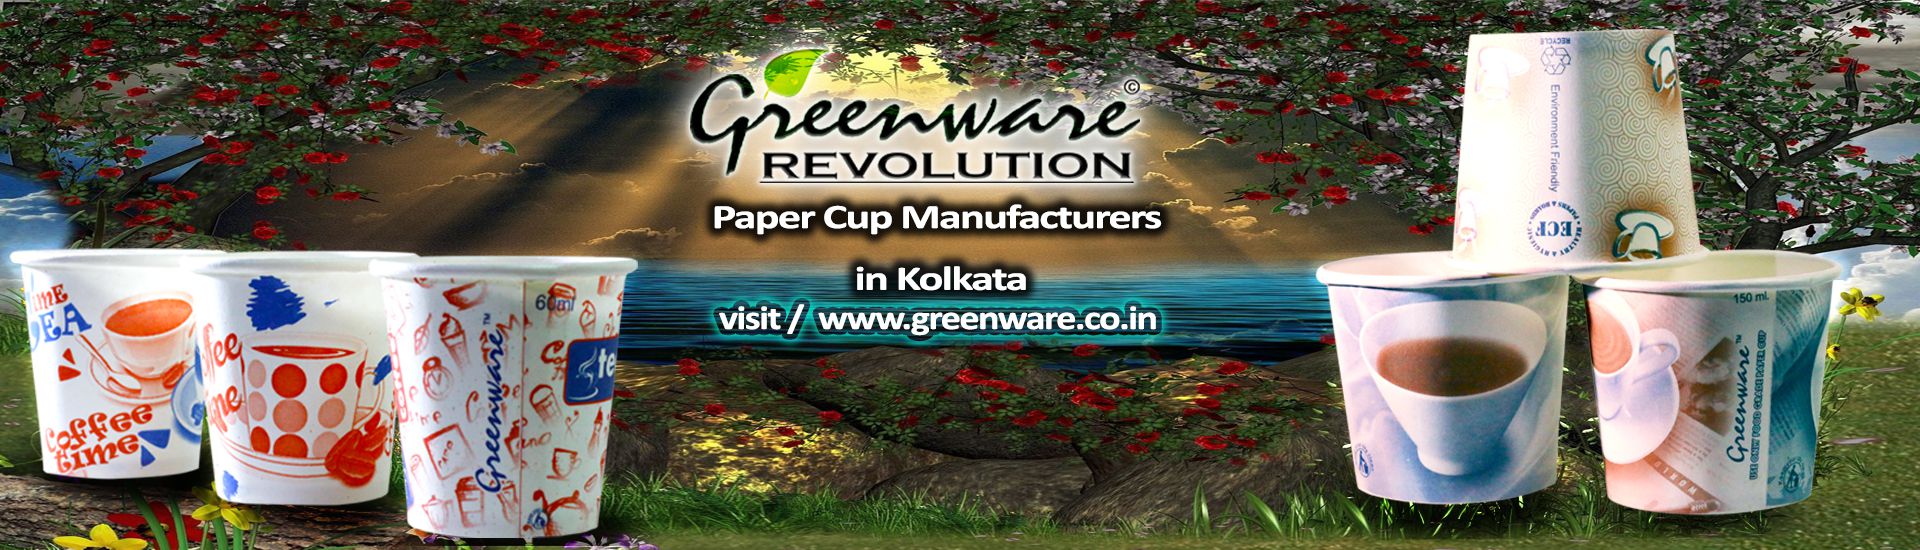 Paper cup manufacturer in kolkata